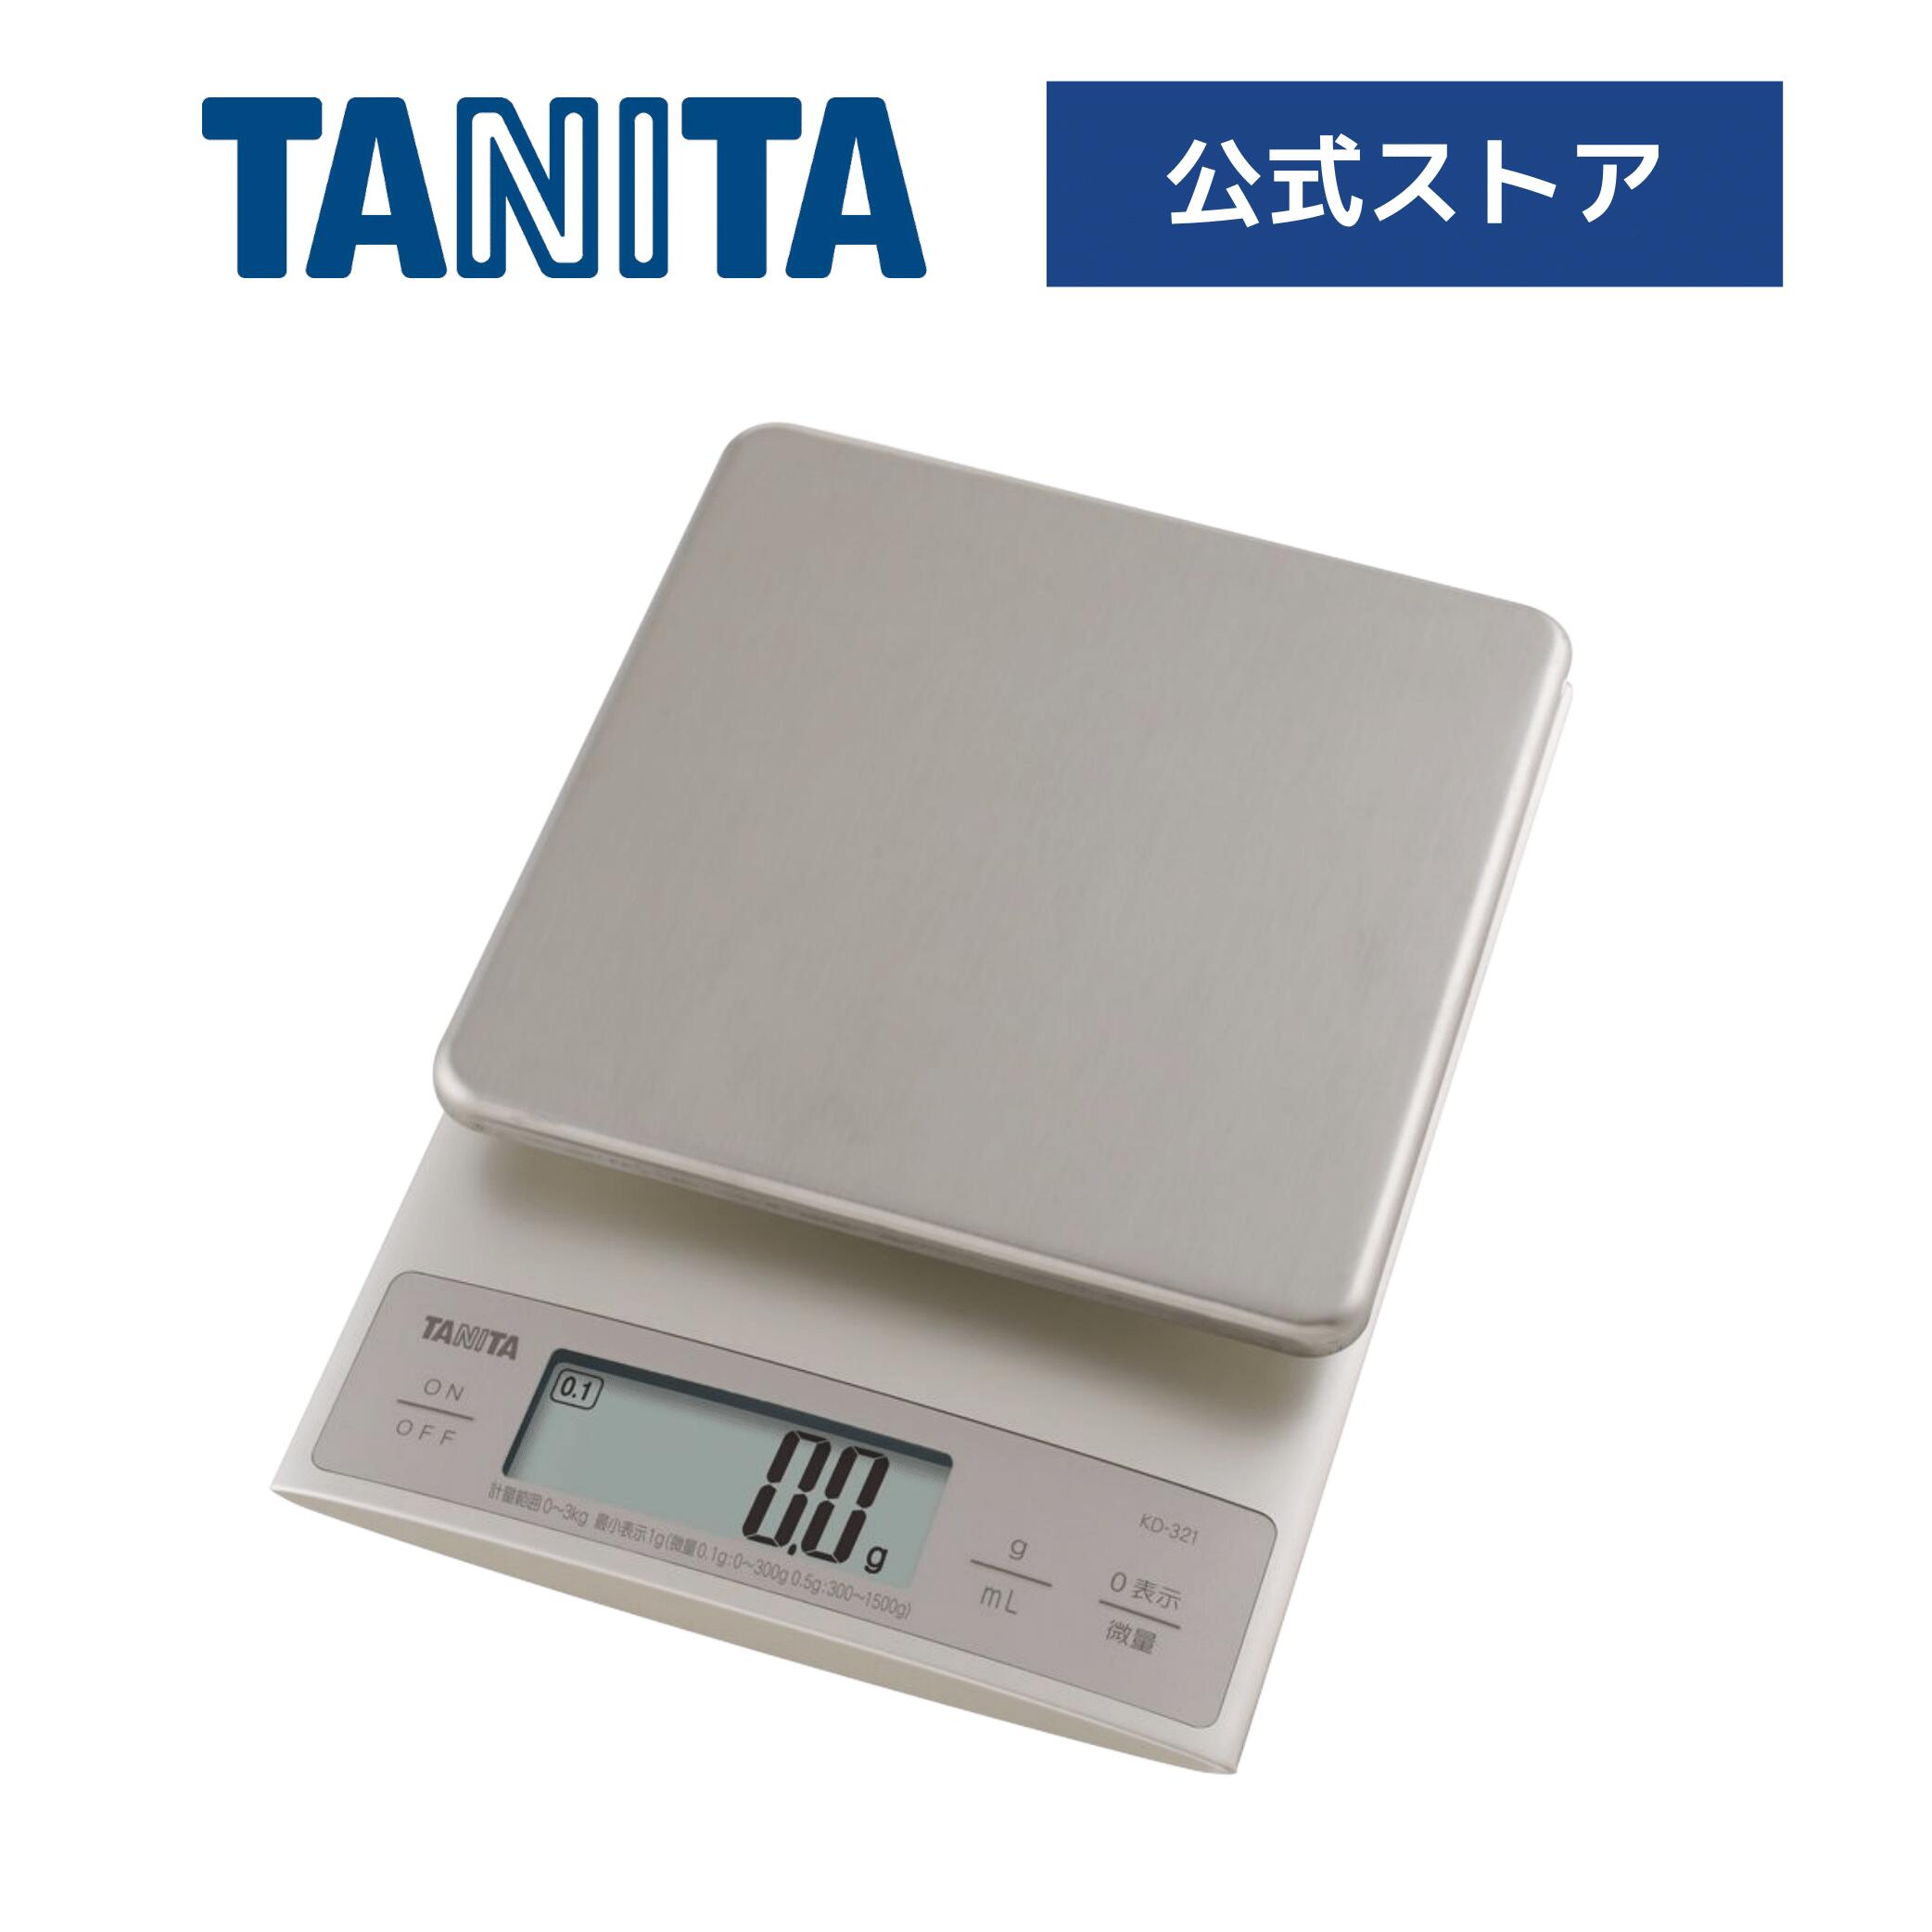 タニタ クッキングスケール キッチン はかり KD-321-SV 計量器 秤 料理 デジタル 最大計量 3kg 0.1g単位 微量 mlモード おしゃれ かわいい コンパクト 計り 測り 量り 正確 高精度 収納ケース パン作り お菓子作り TANITA